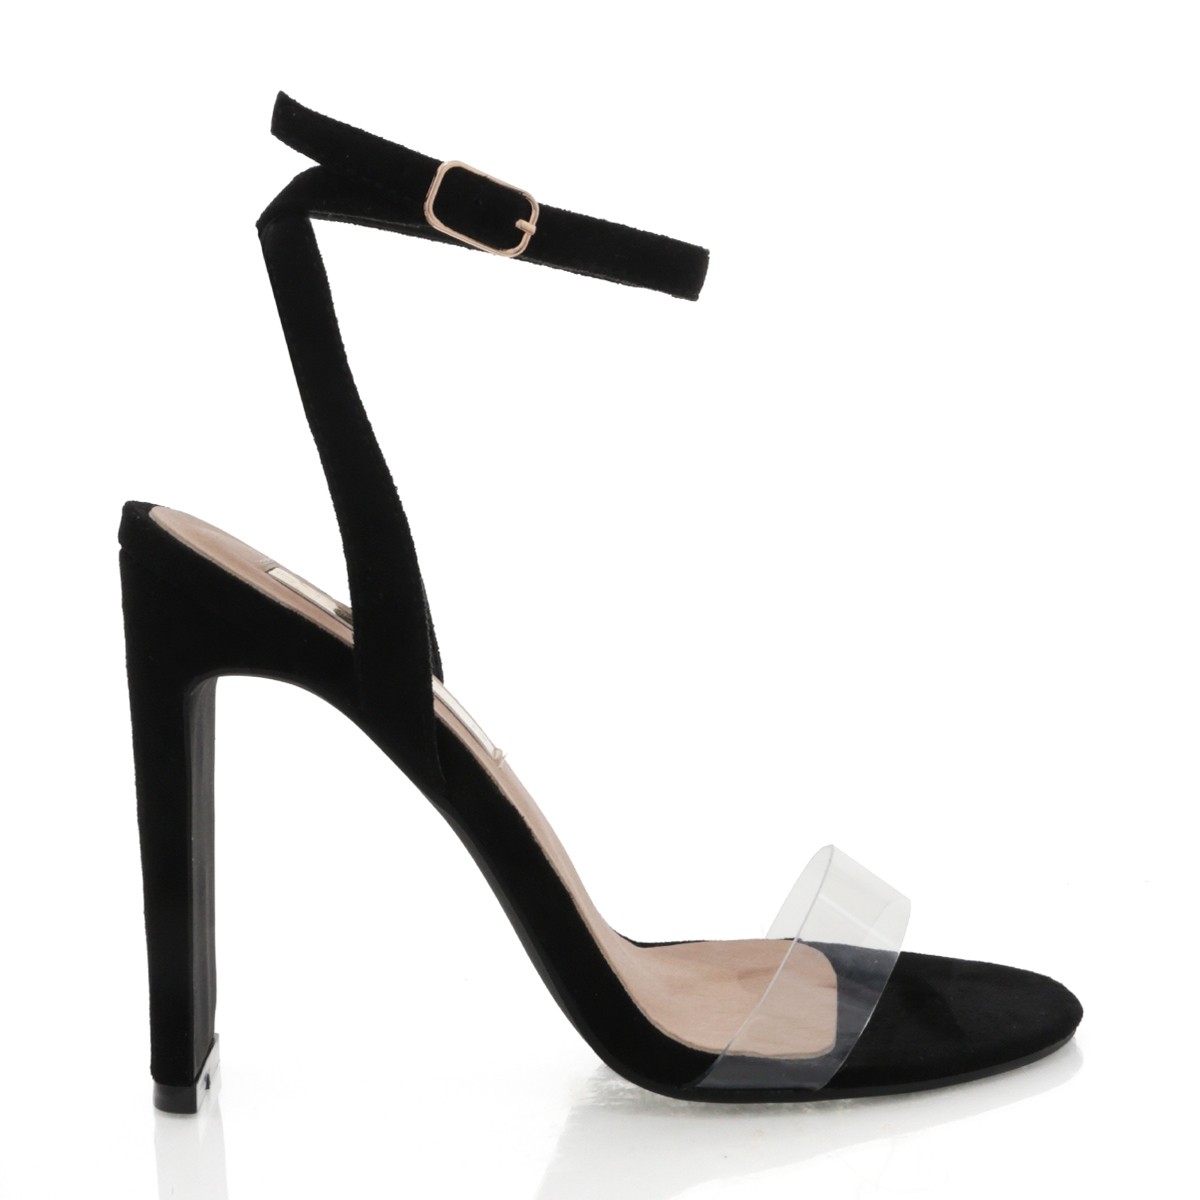 Delphine Black Suede by Billini Shoes on Sale | ShoeSales